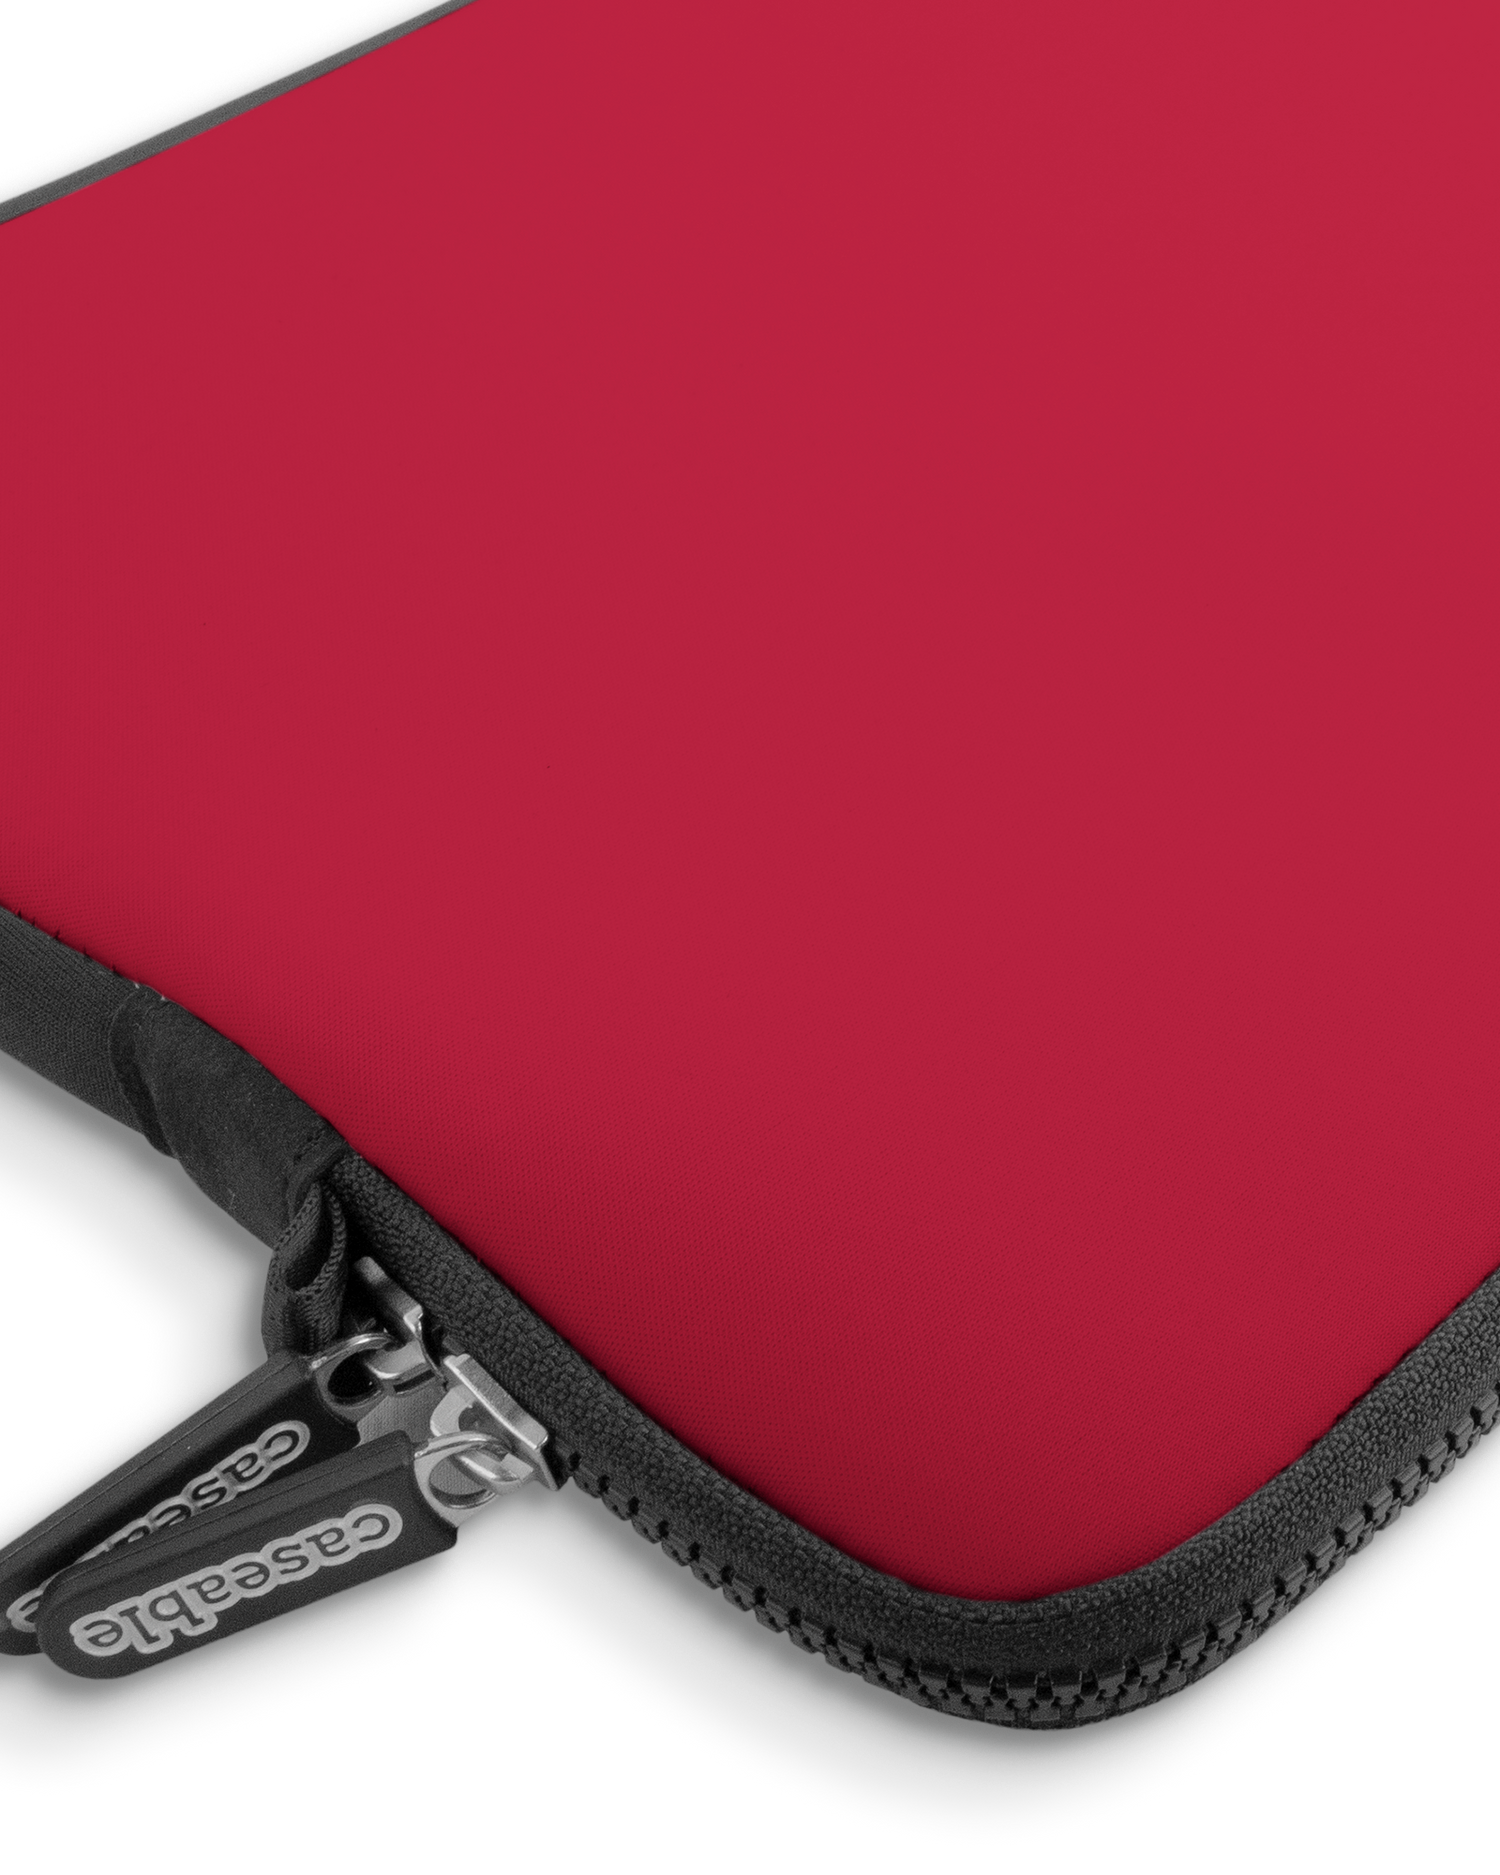 RED Premium Laptoptasche 13-14 Zoll mit Gerät im Inneren